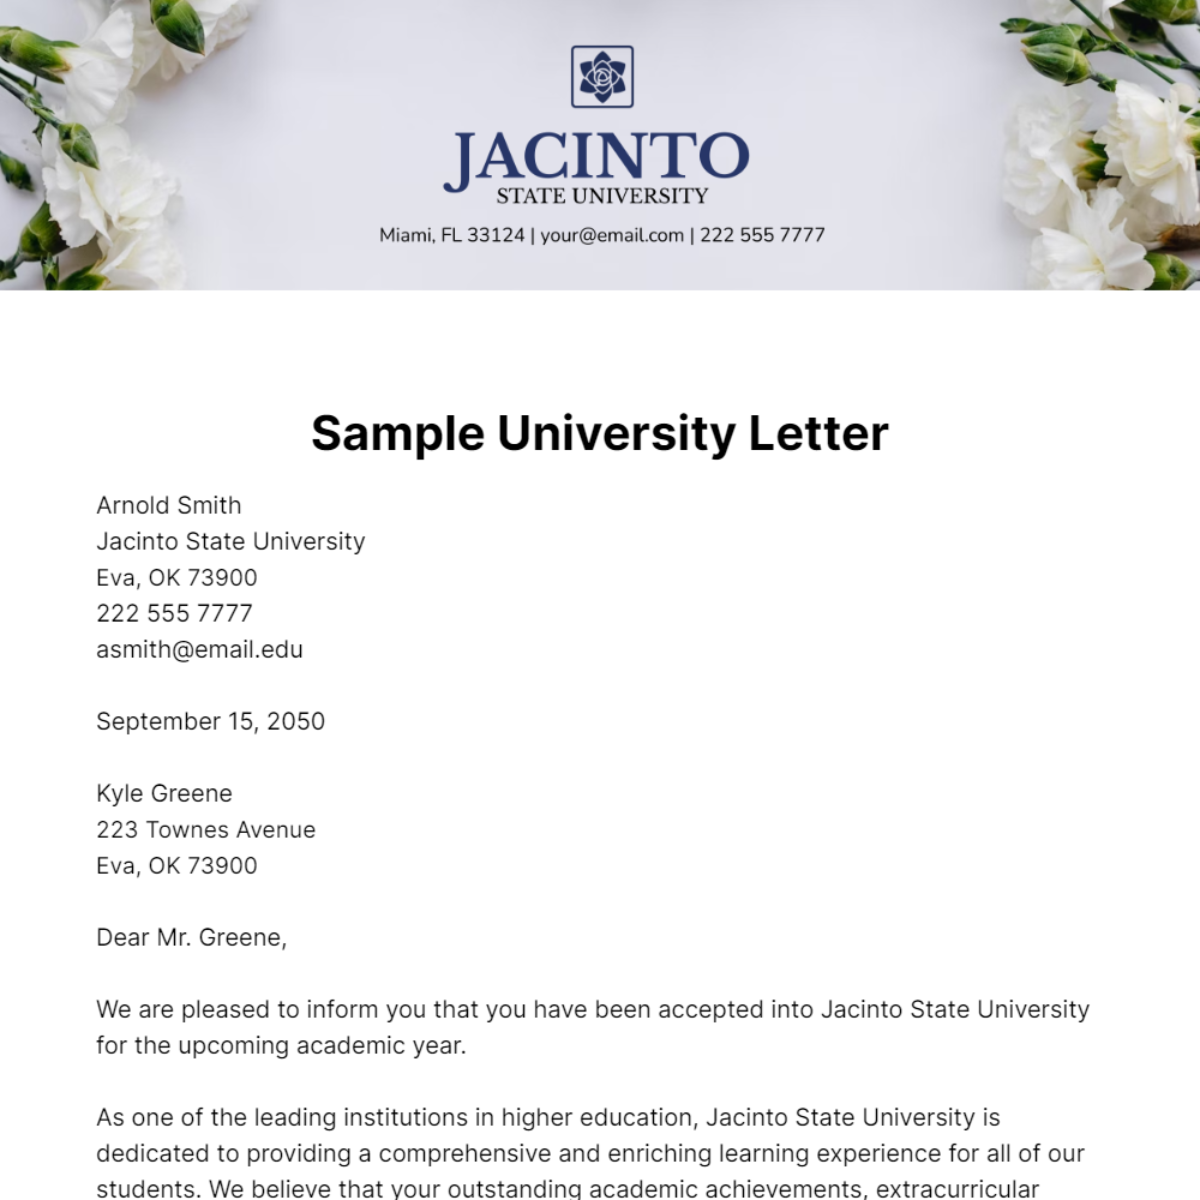 Sample University Letter Template